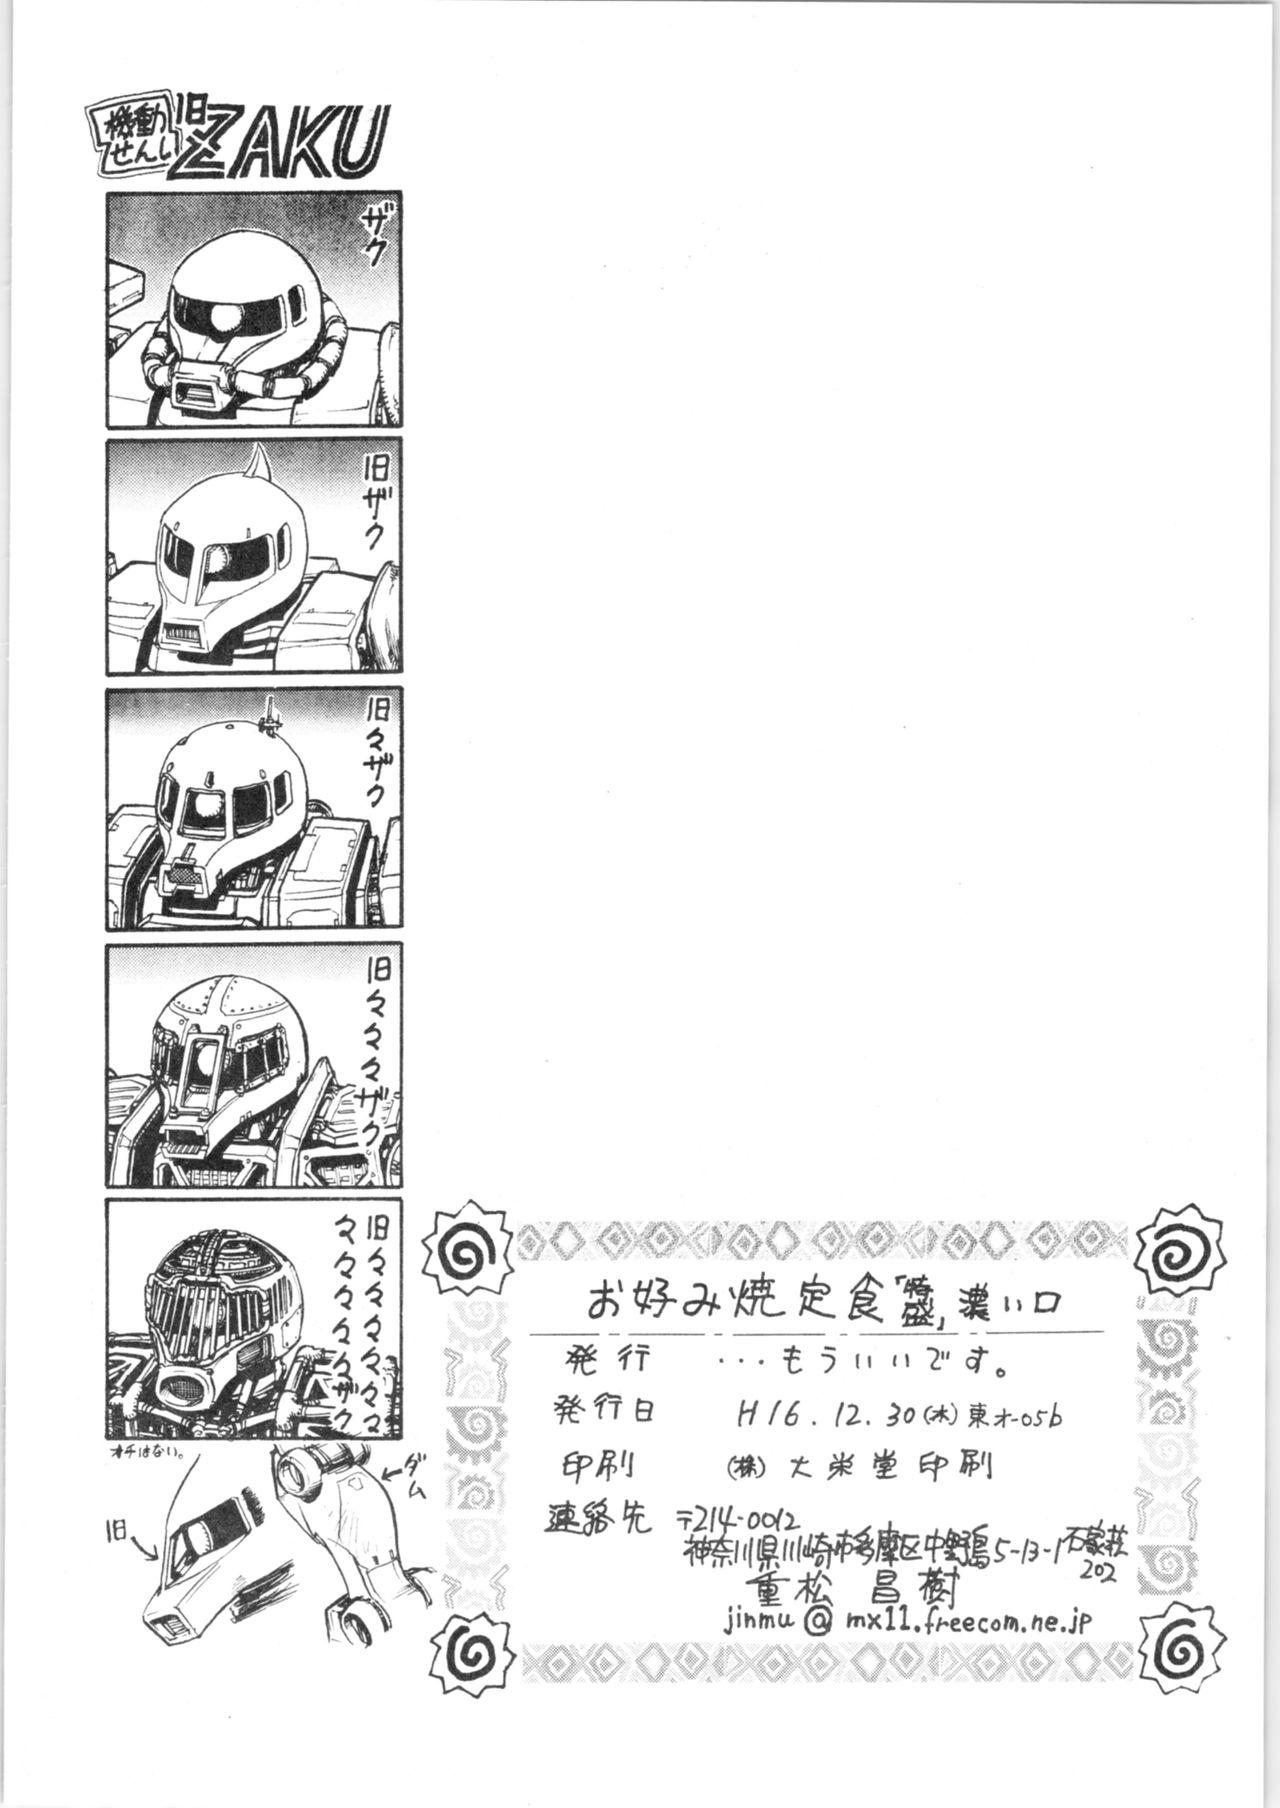 Dick Sucking Okonomi Yaki Teishoku "Tokumori" - Ranma 12 Freeporn - Page 33